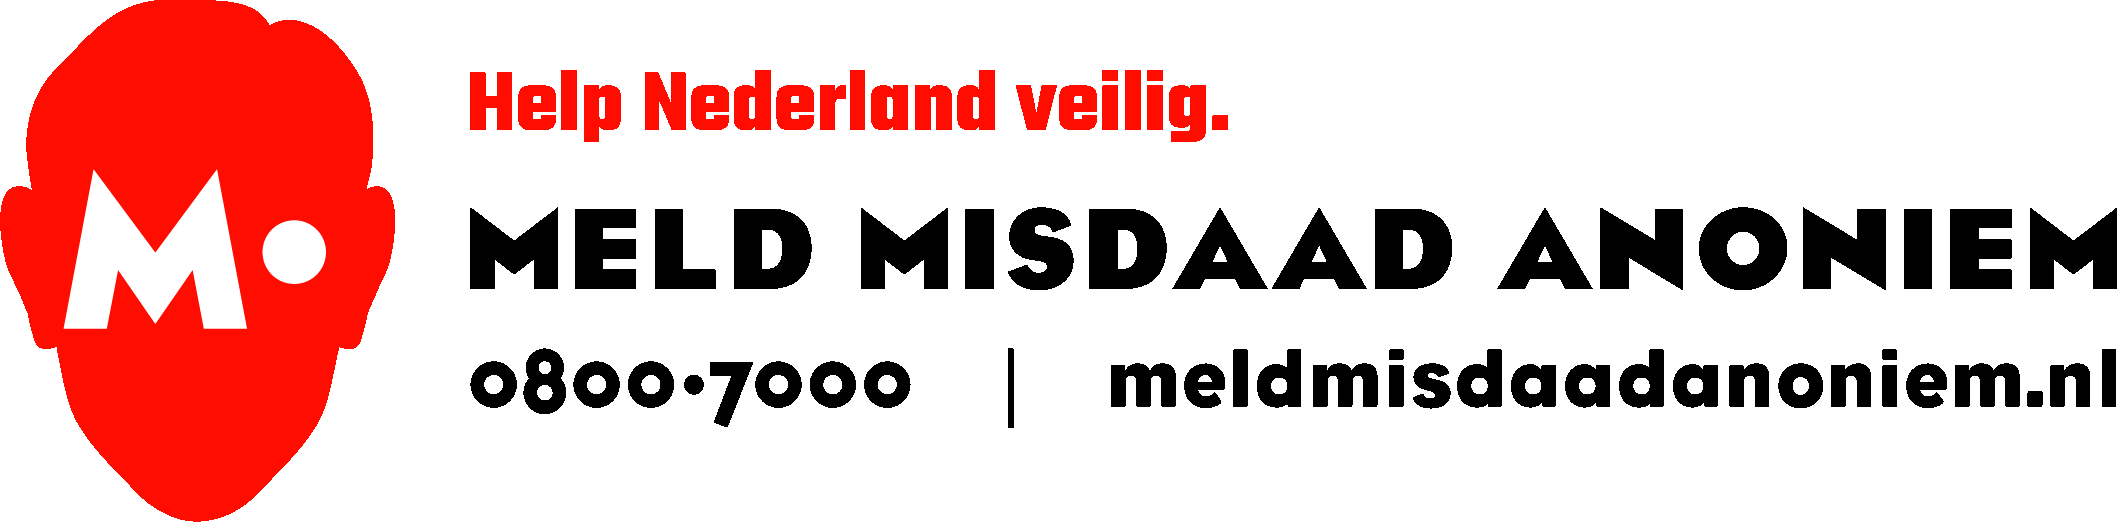 www.meldmisdaadanoniem.nl